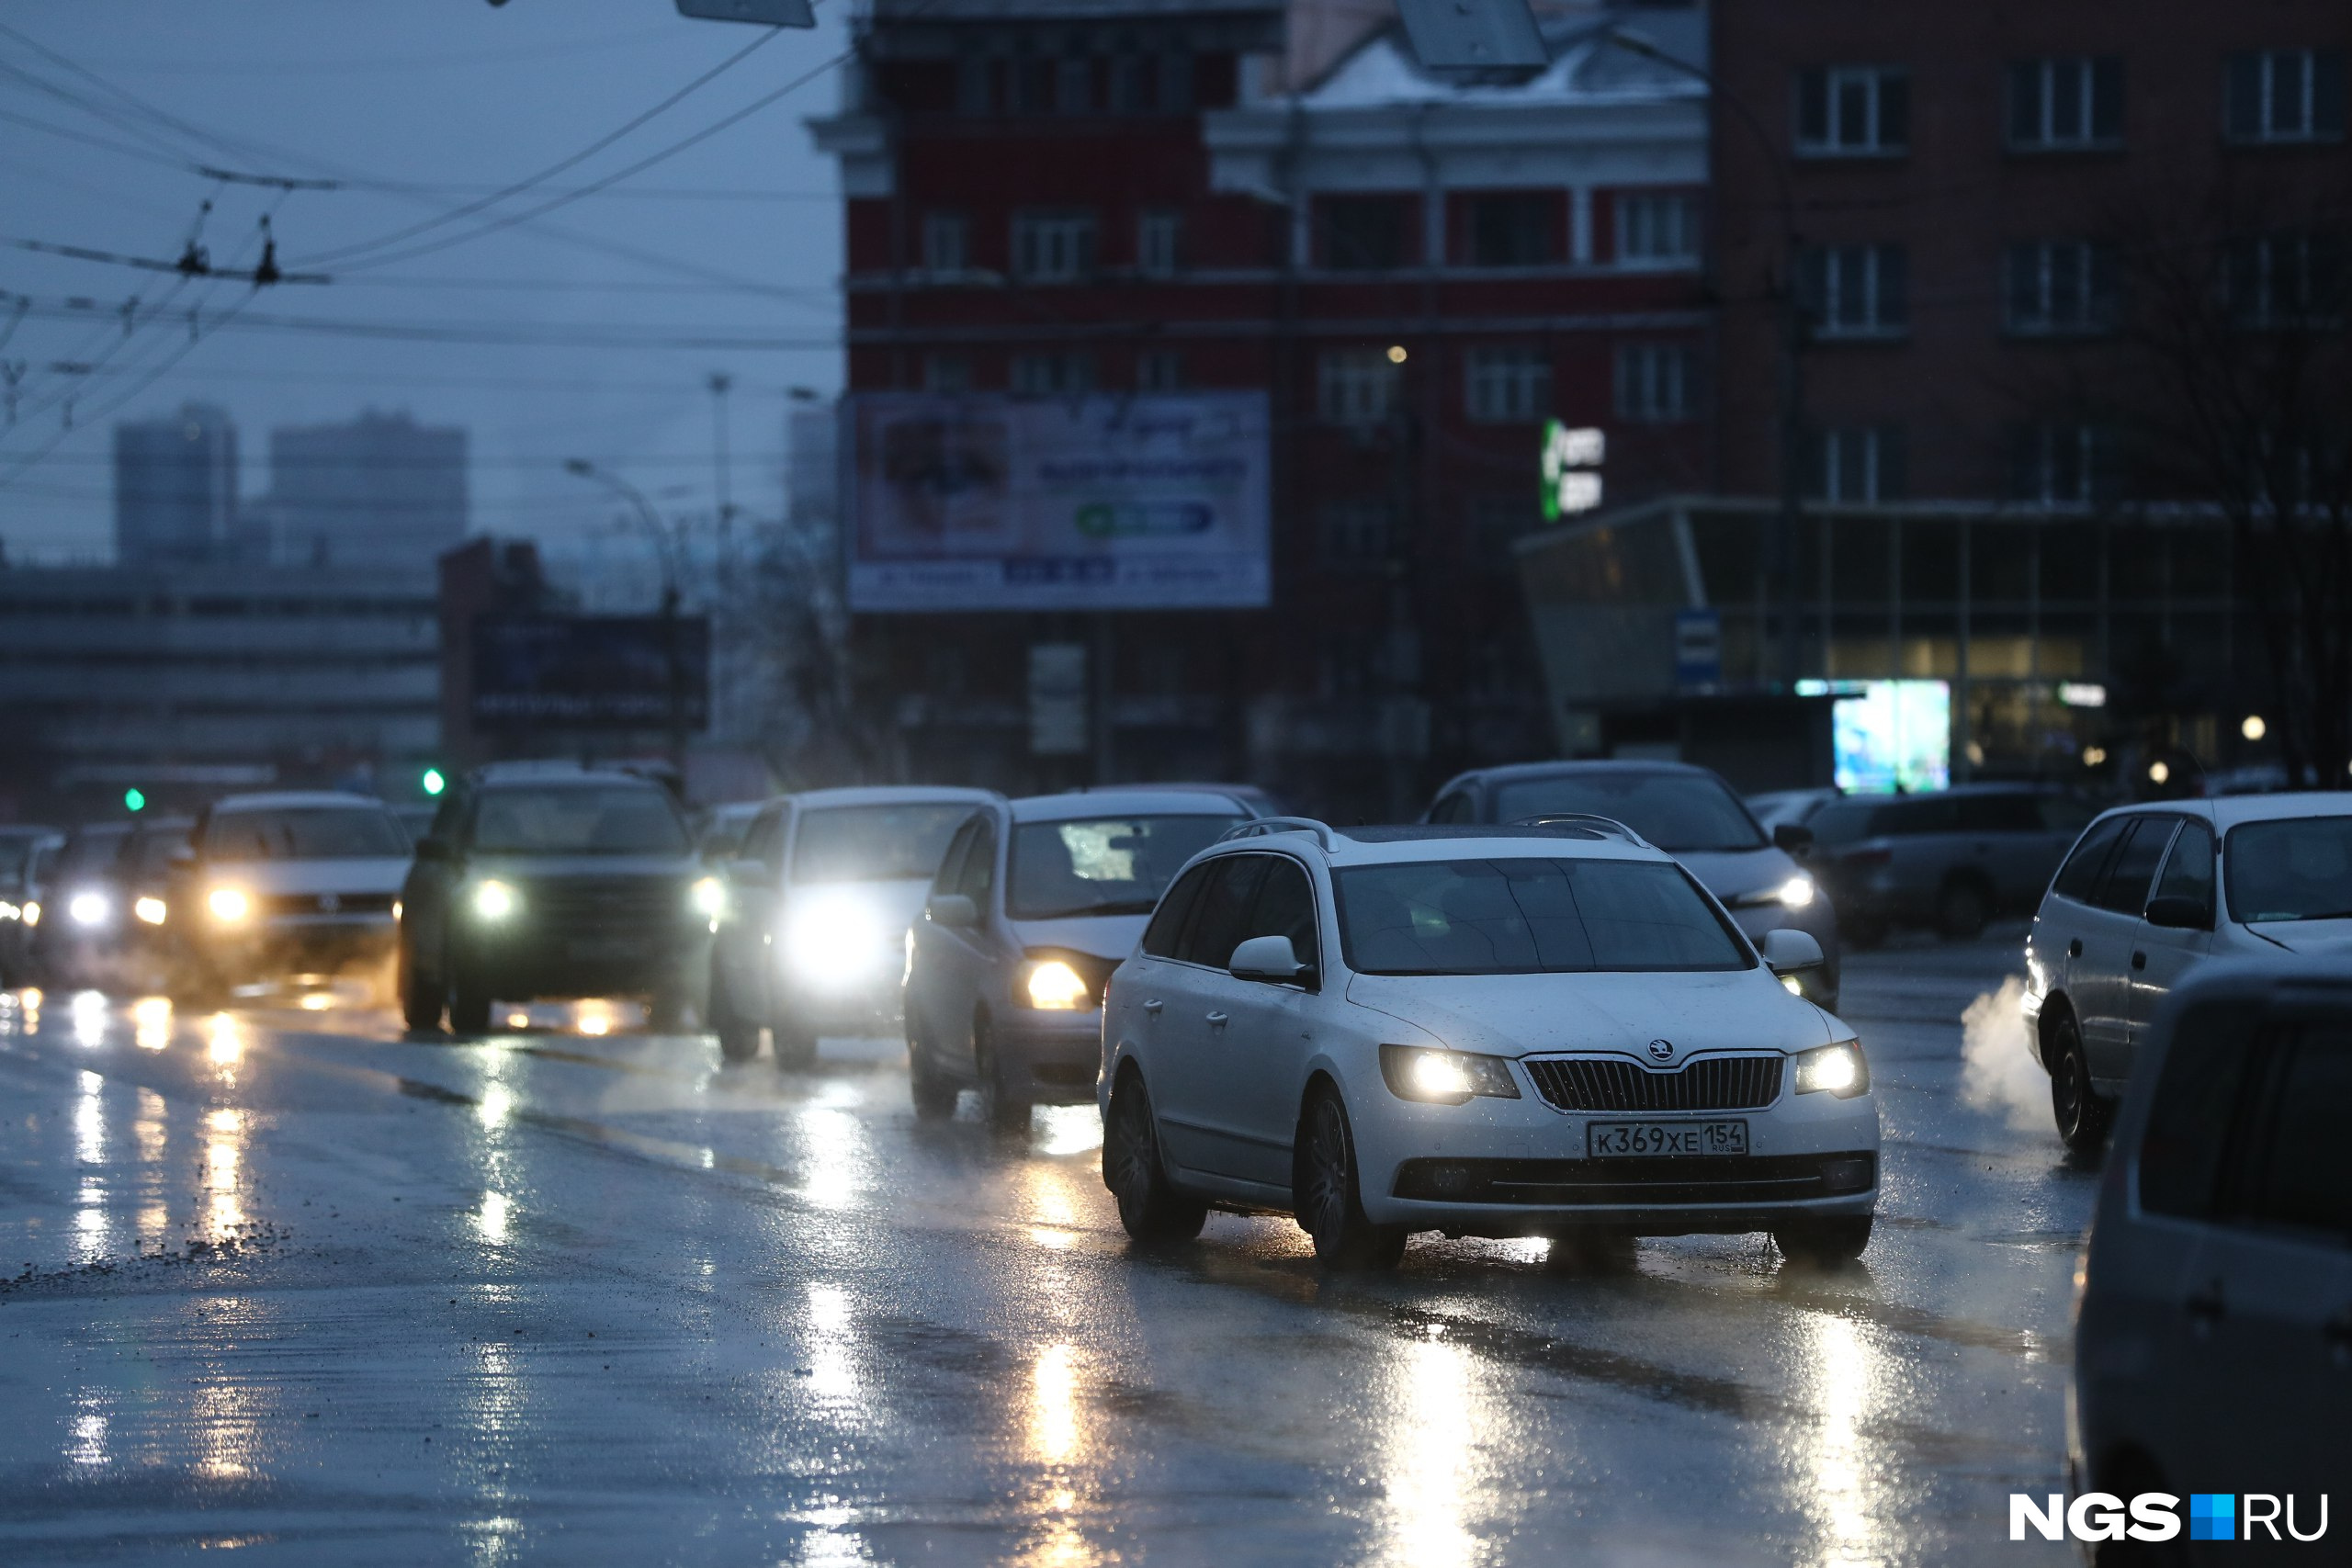 В воскресенье, 11 февраля, в Новосибирске обещают похолодание. Субботние лужи могут превратиться в каток